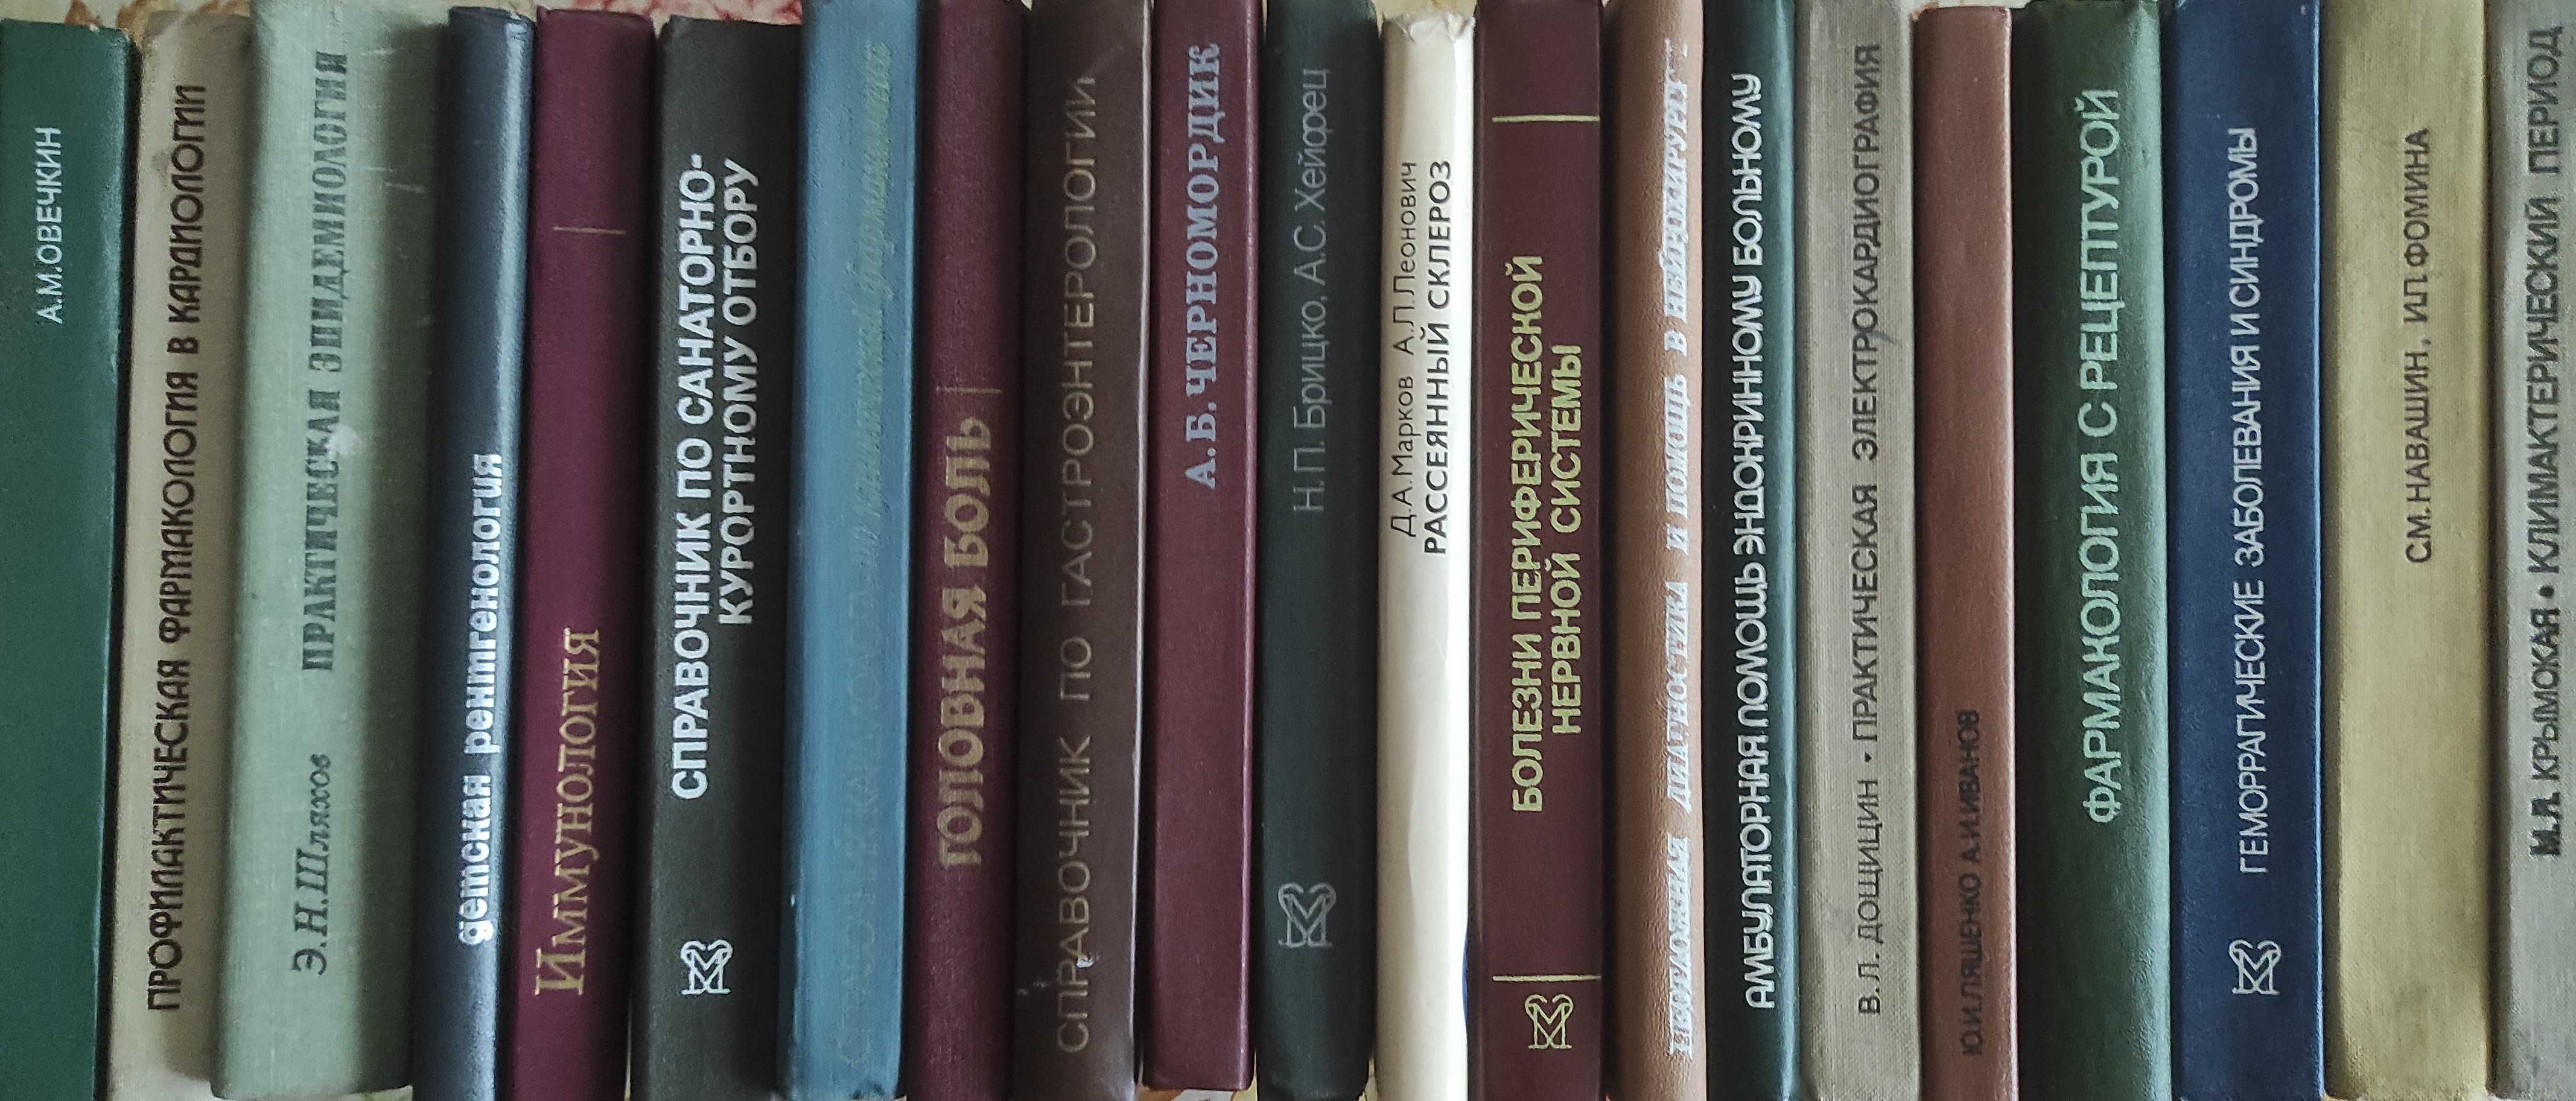 Медицинская литература для студентов и врачей.